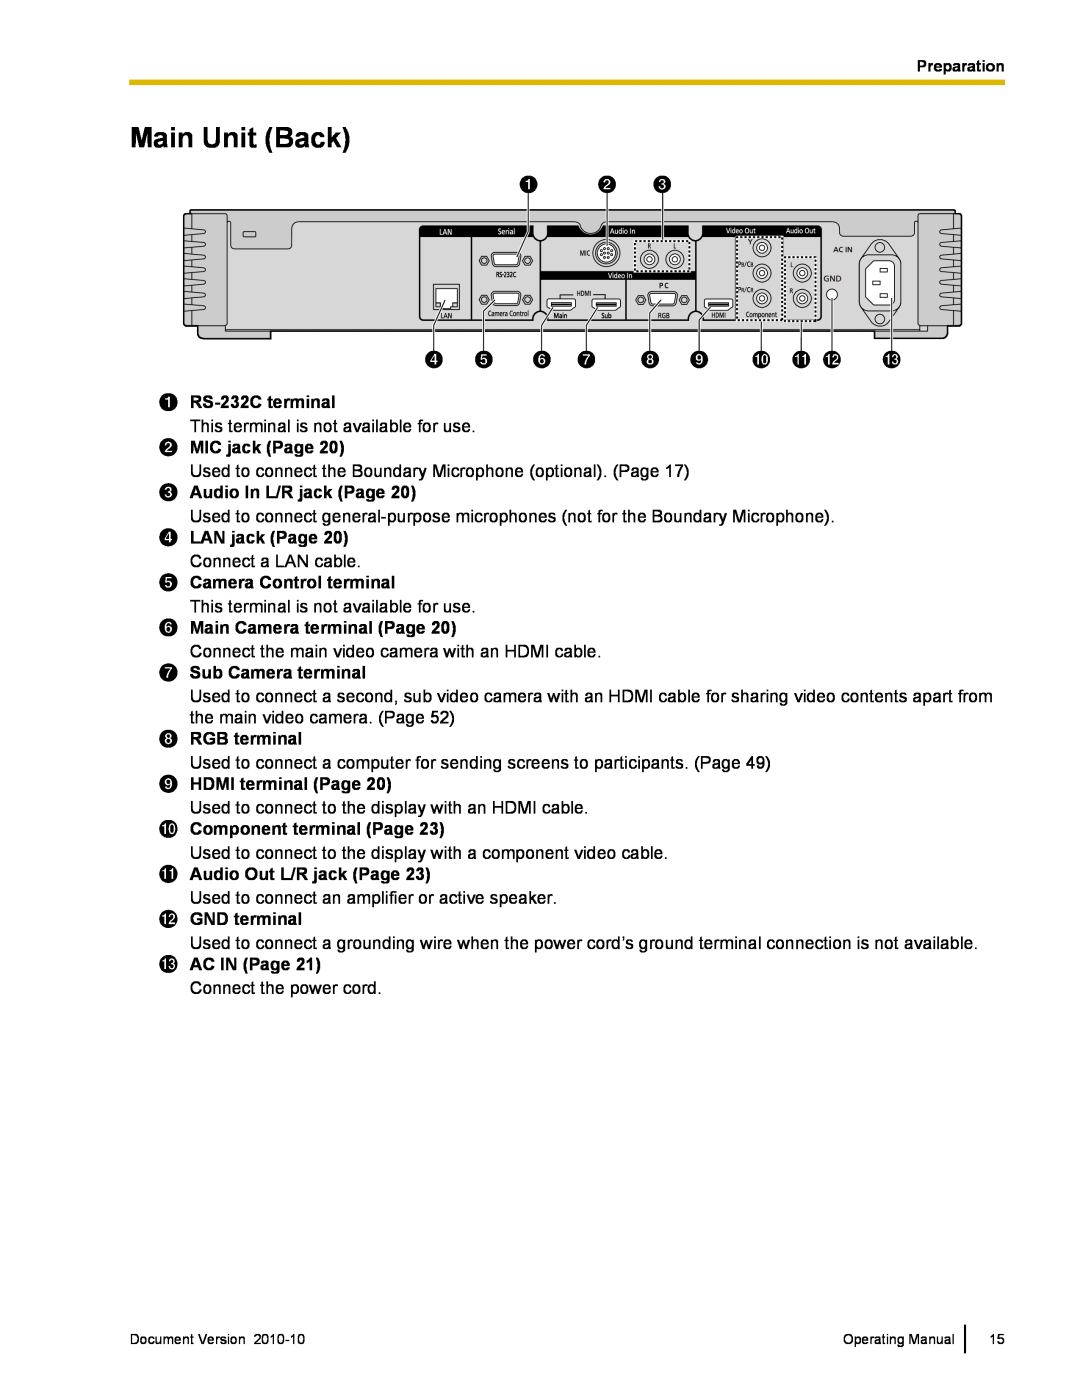 Panasonic KX-VC500 manual Main Unit Back 